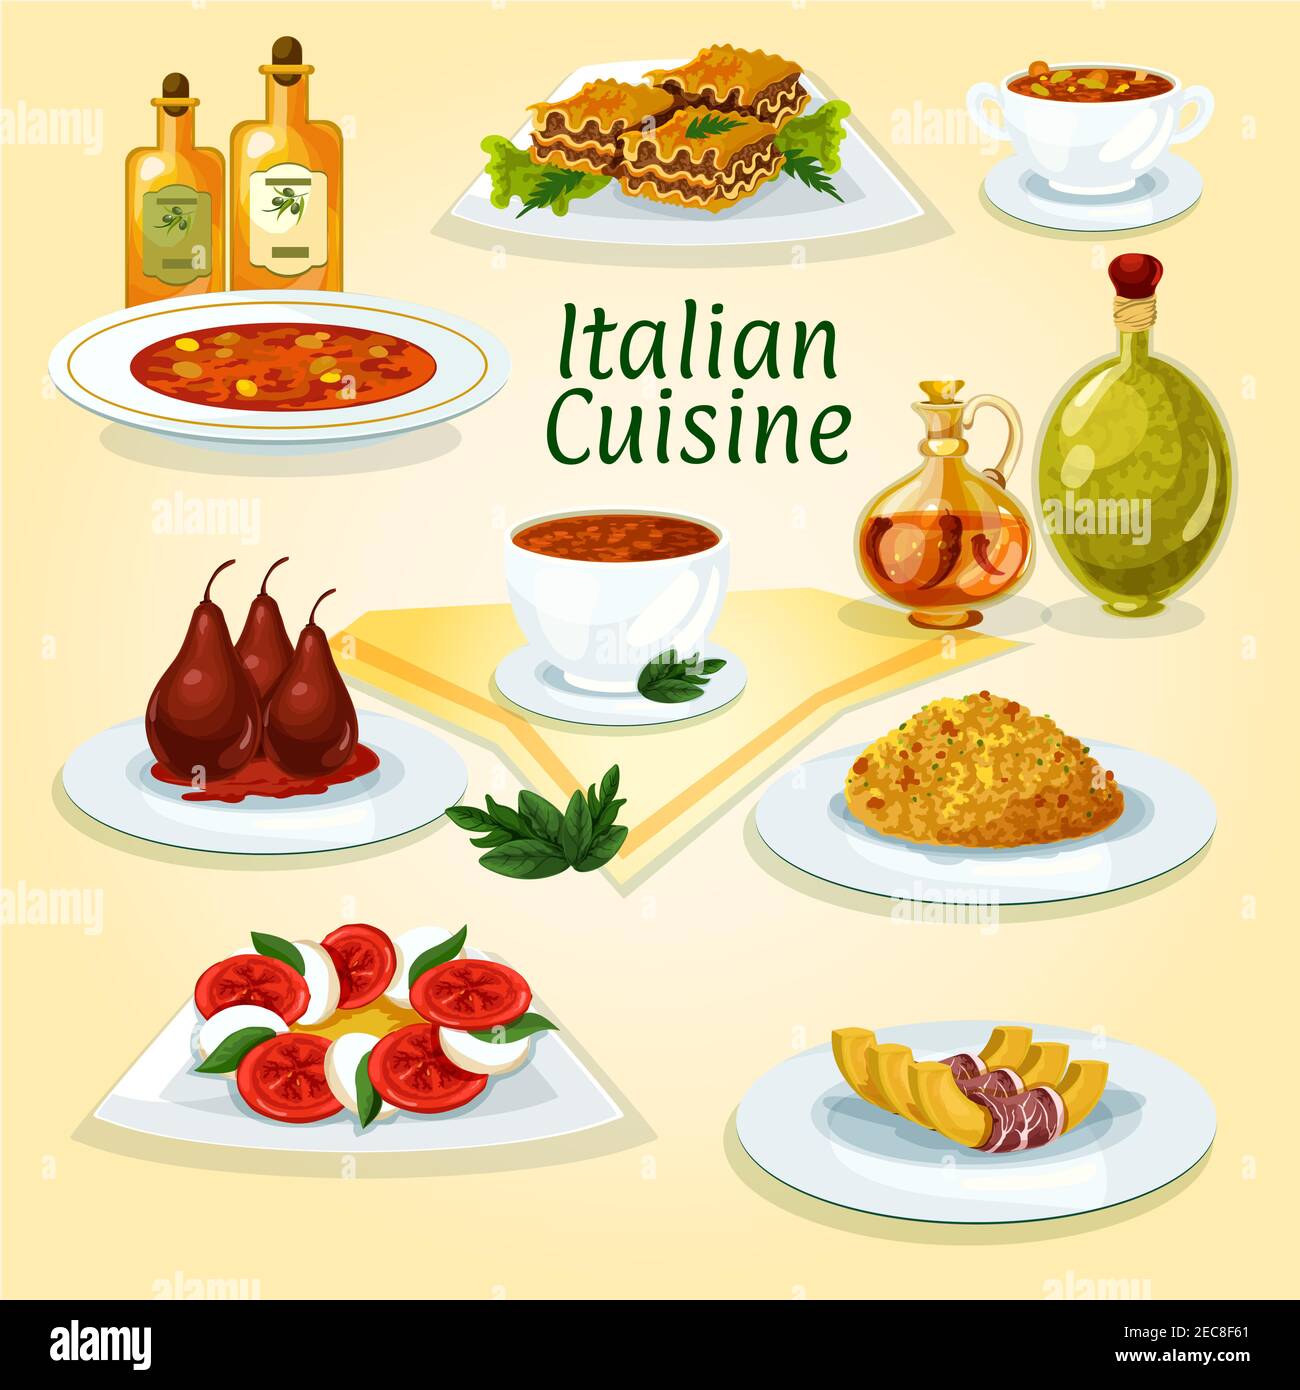 Italian cuisine traditional risotto icon served with lasagna, tomato and mozzarella salad caprese, spicy tomato soup, pasta soup minestrone, pumpkin w Stock Vector